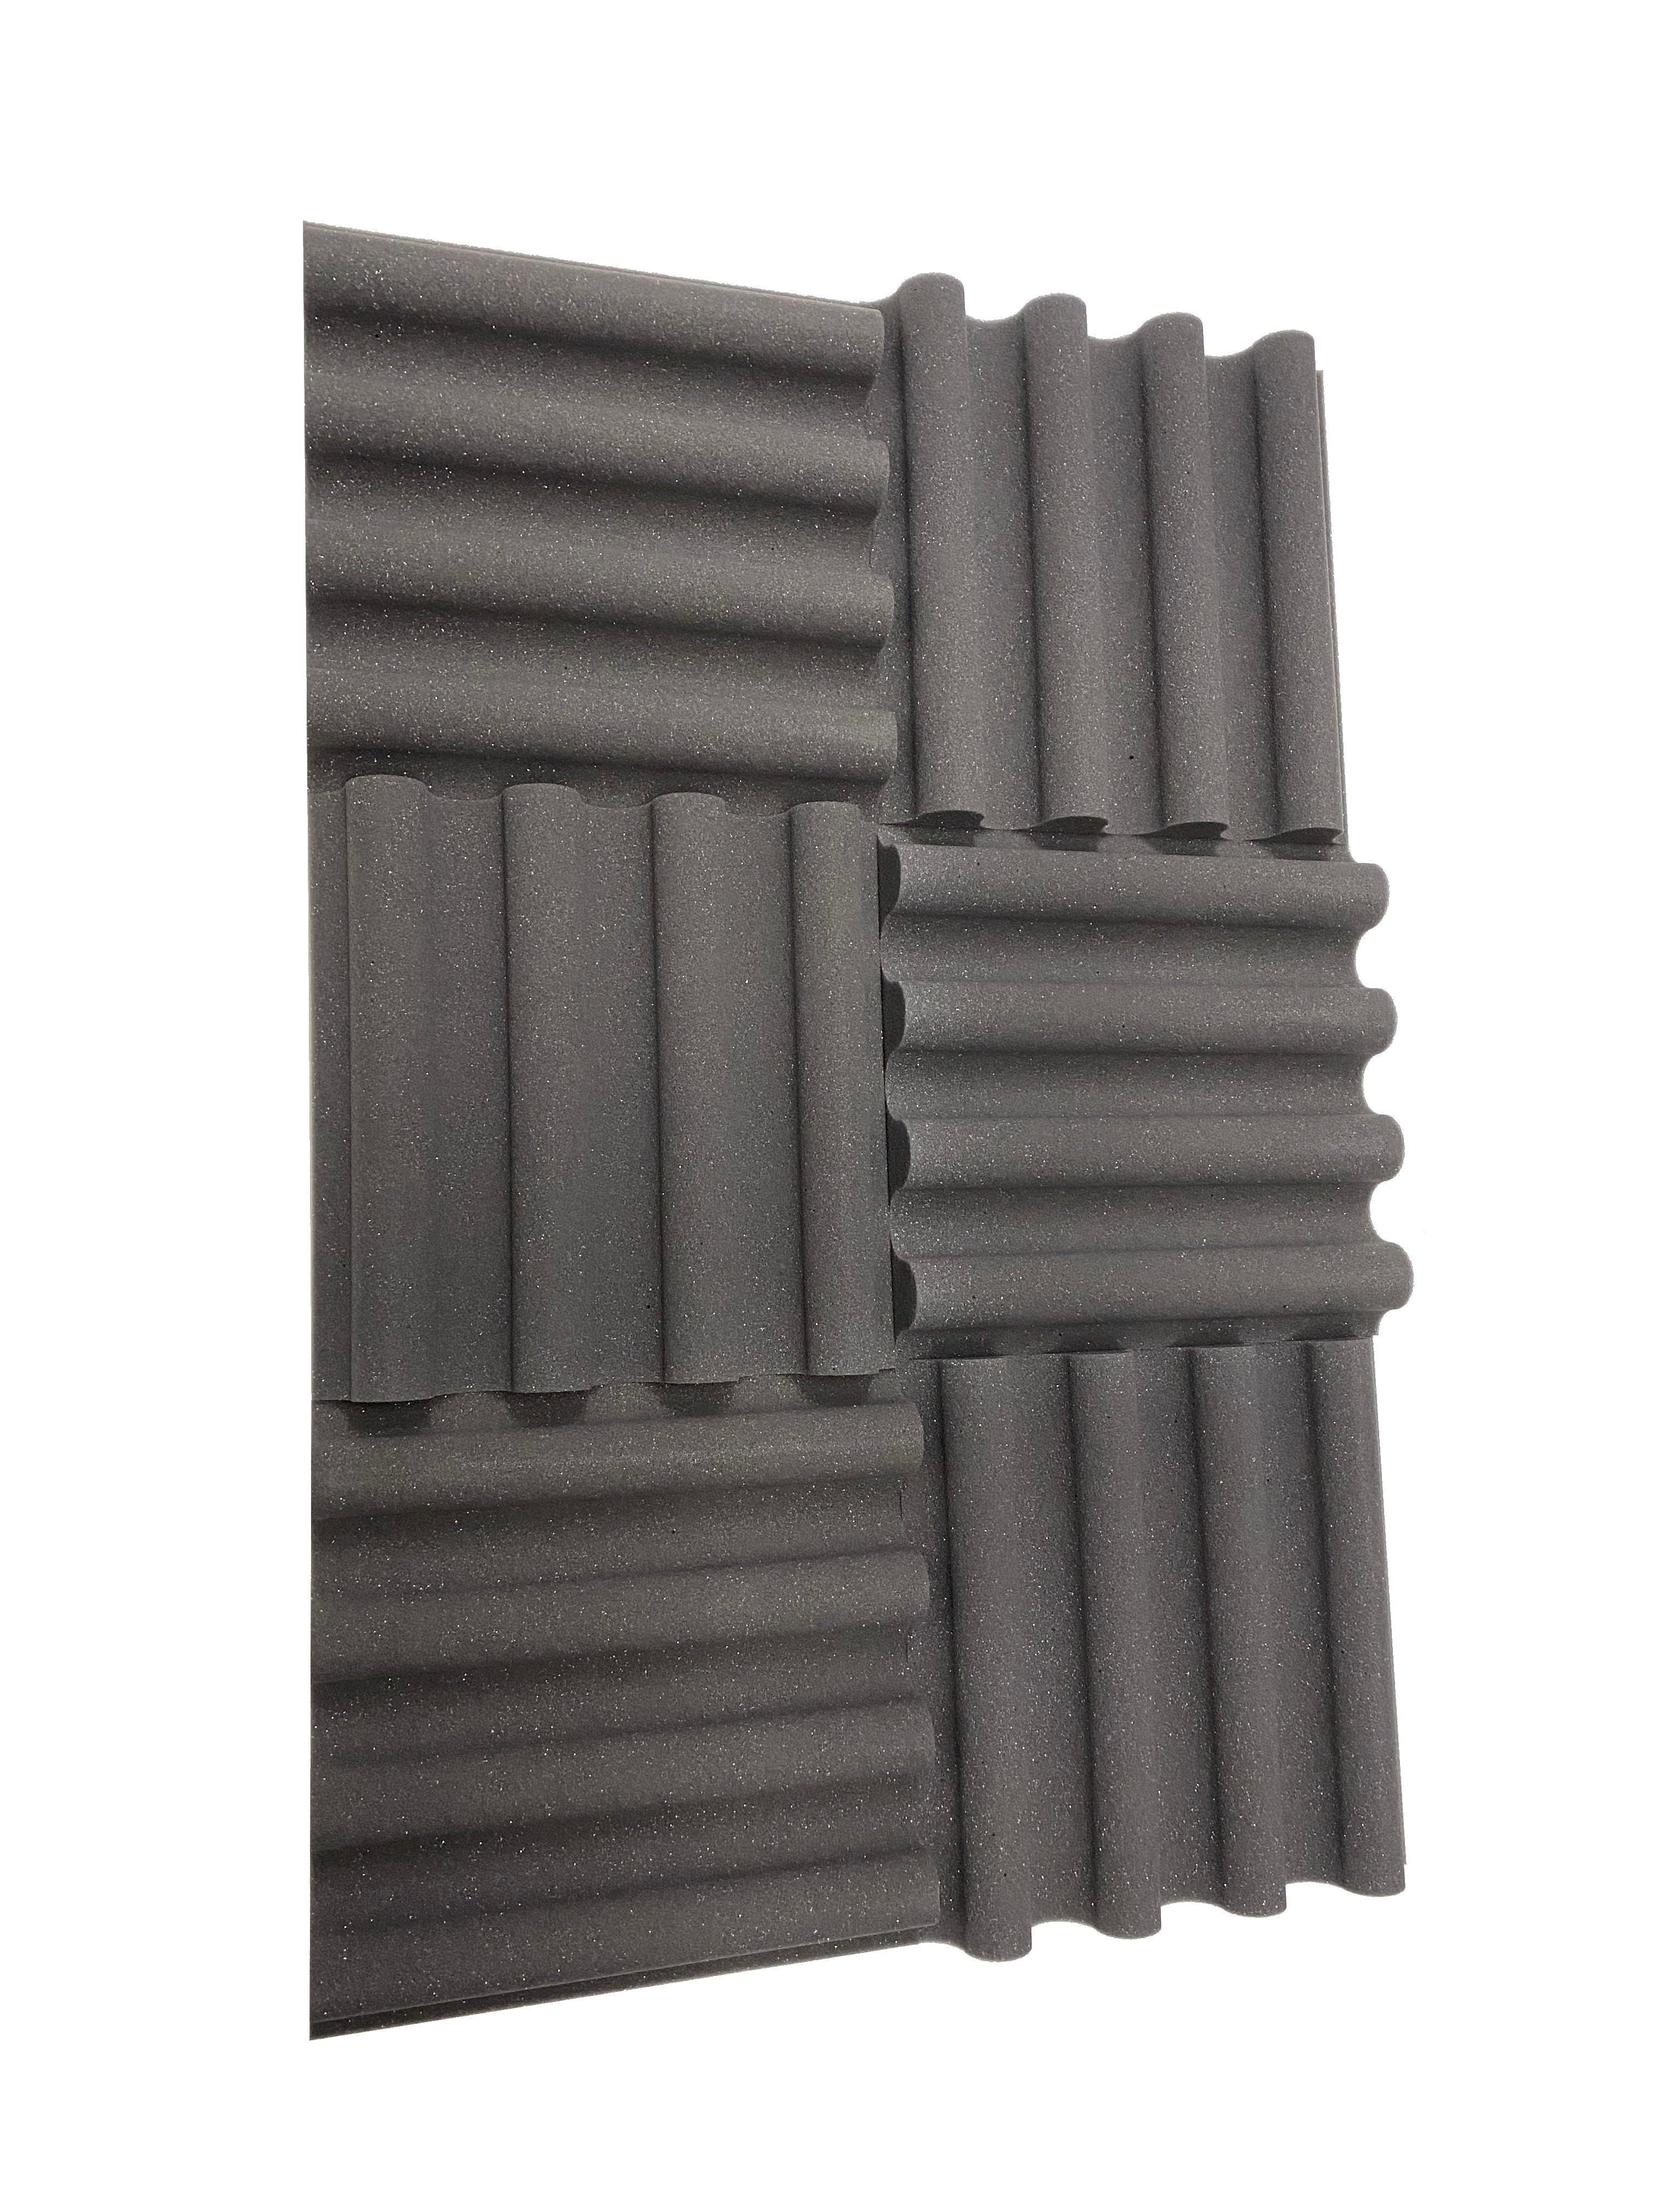 Mini Wave 12" Acoustic Studio Foam Tile Pack - 12 Tiles, 1.1qm Coverage